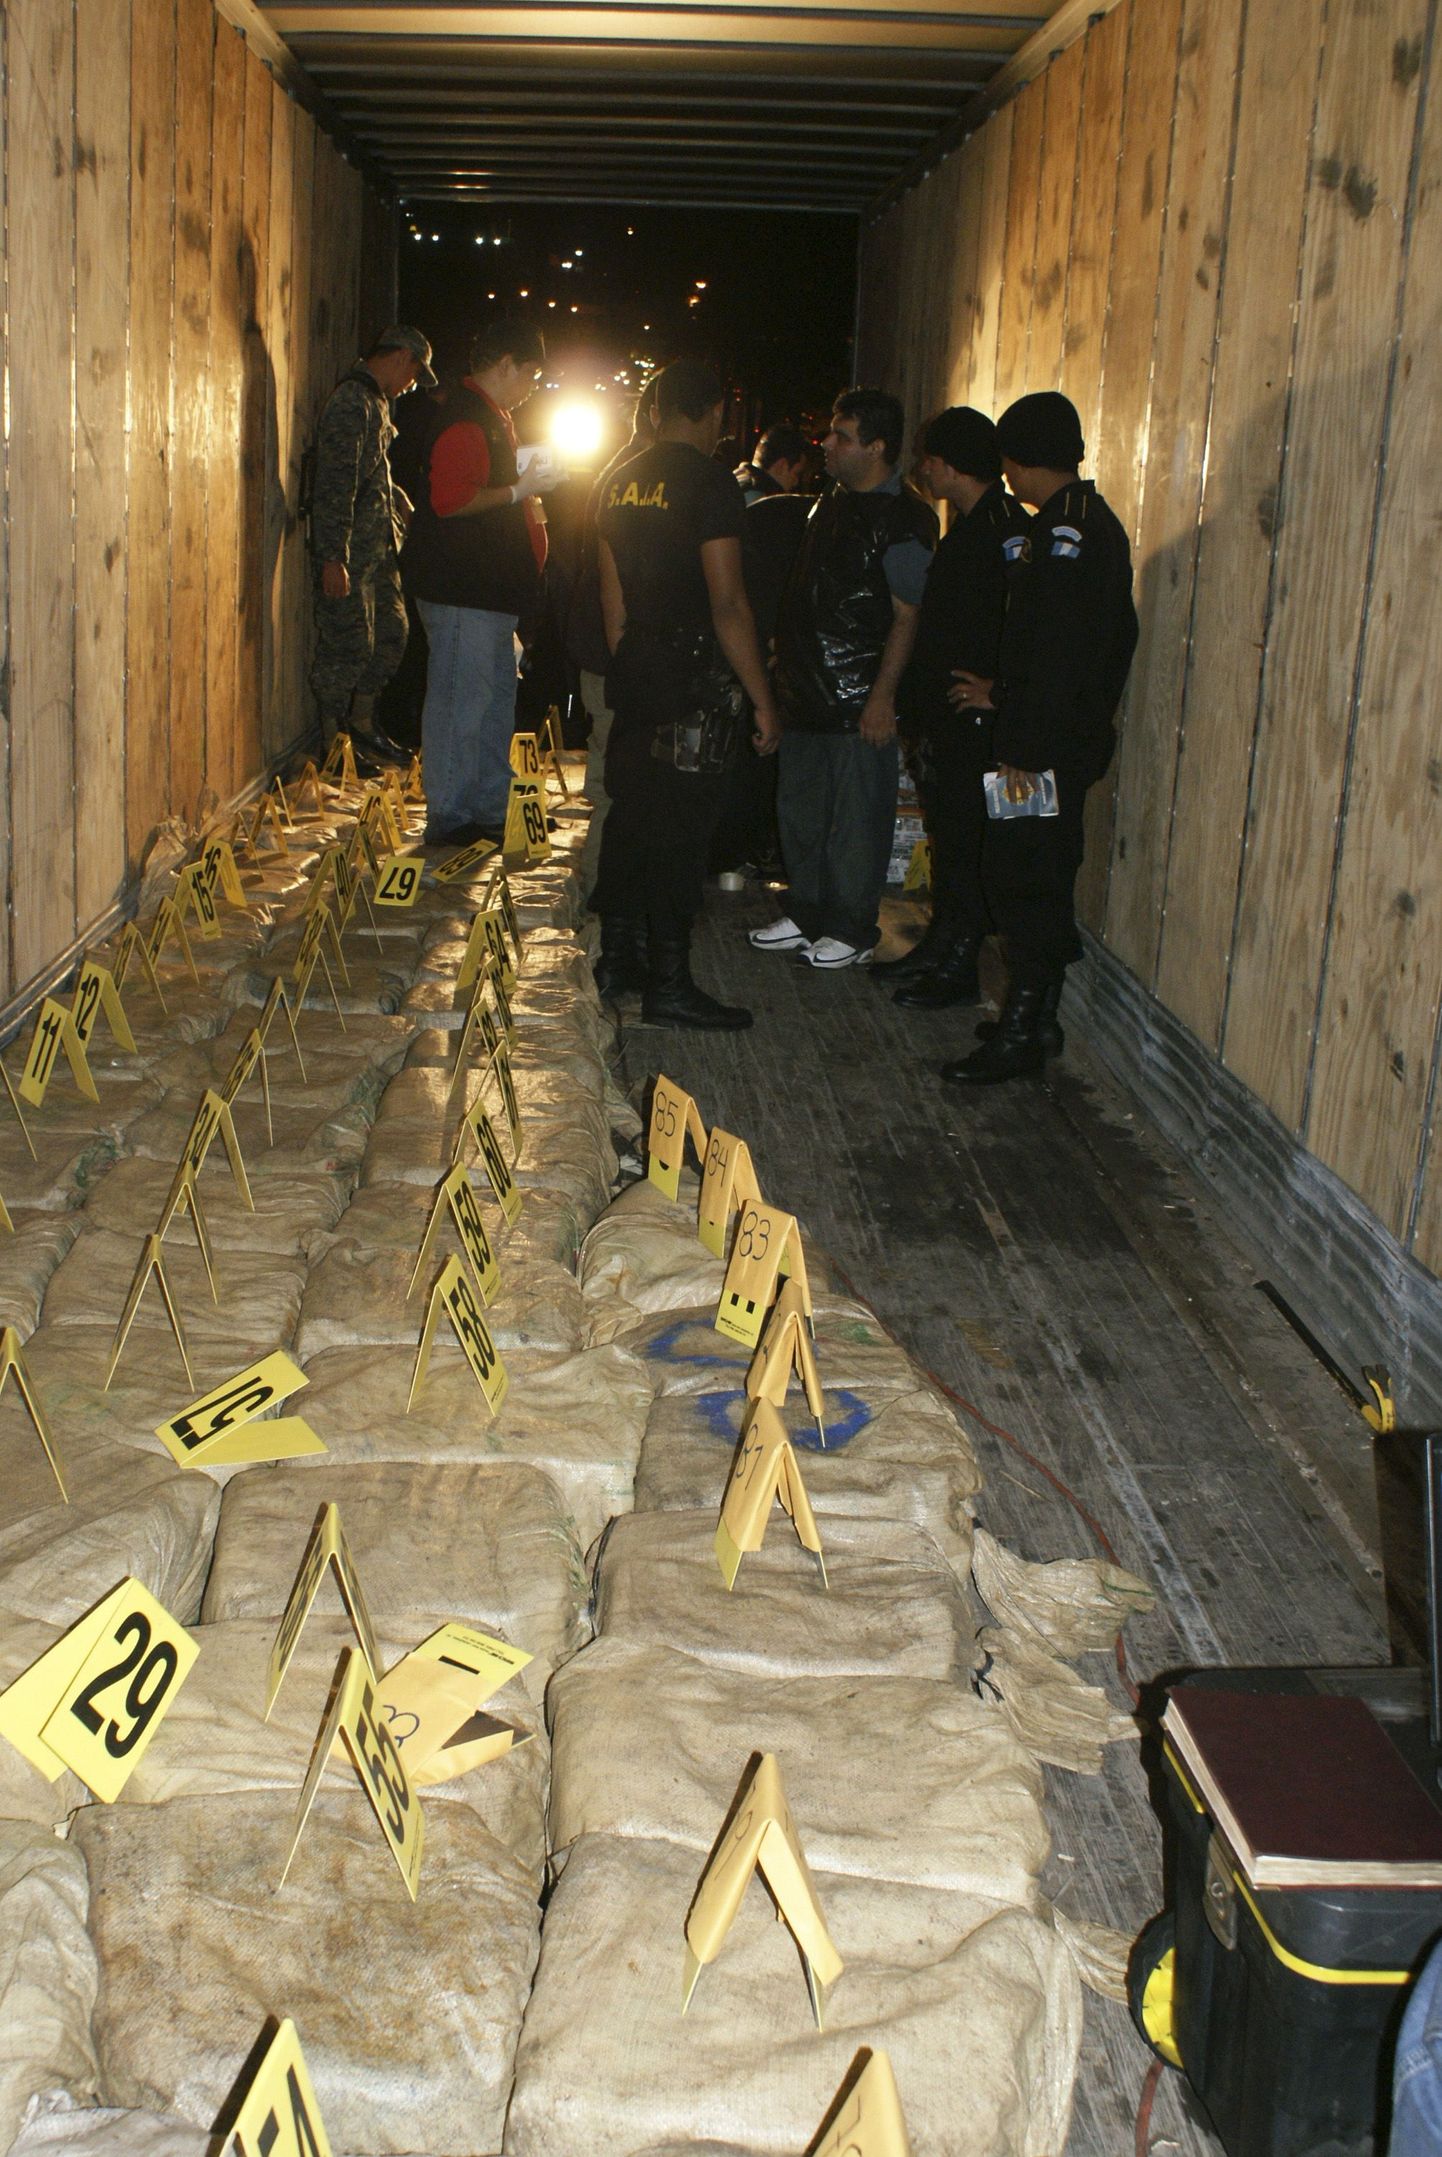 Miniallveelaevalt konfiskeeriti kümme tonni kokaiini